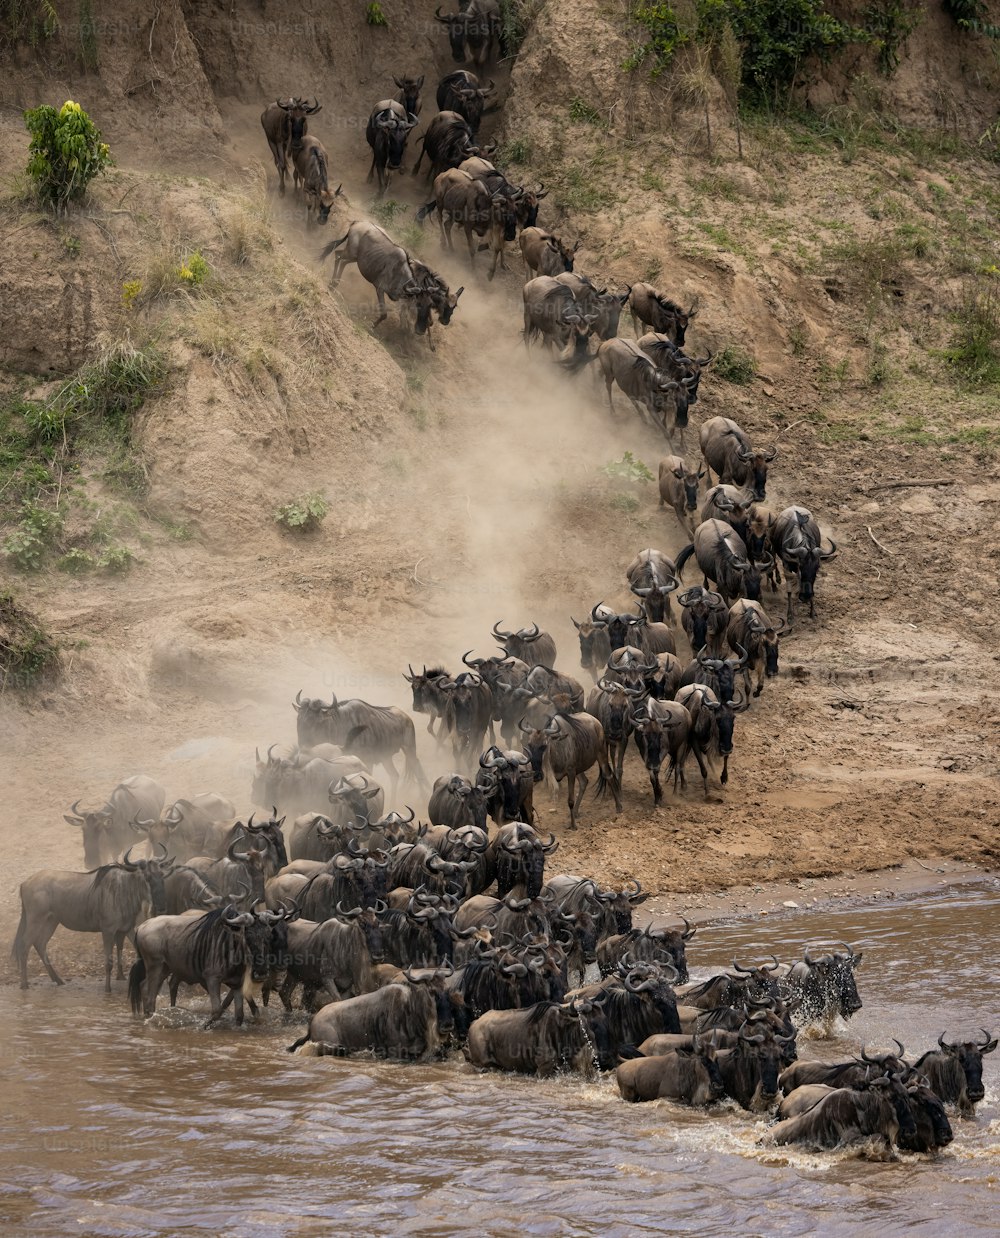 La migración de ñus en África